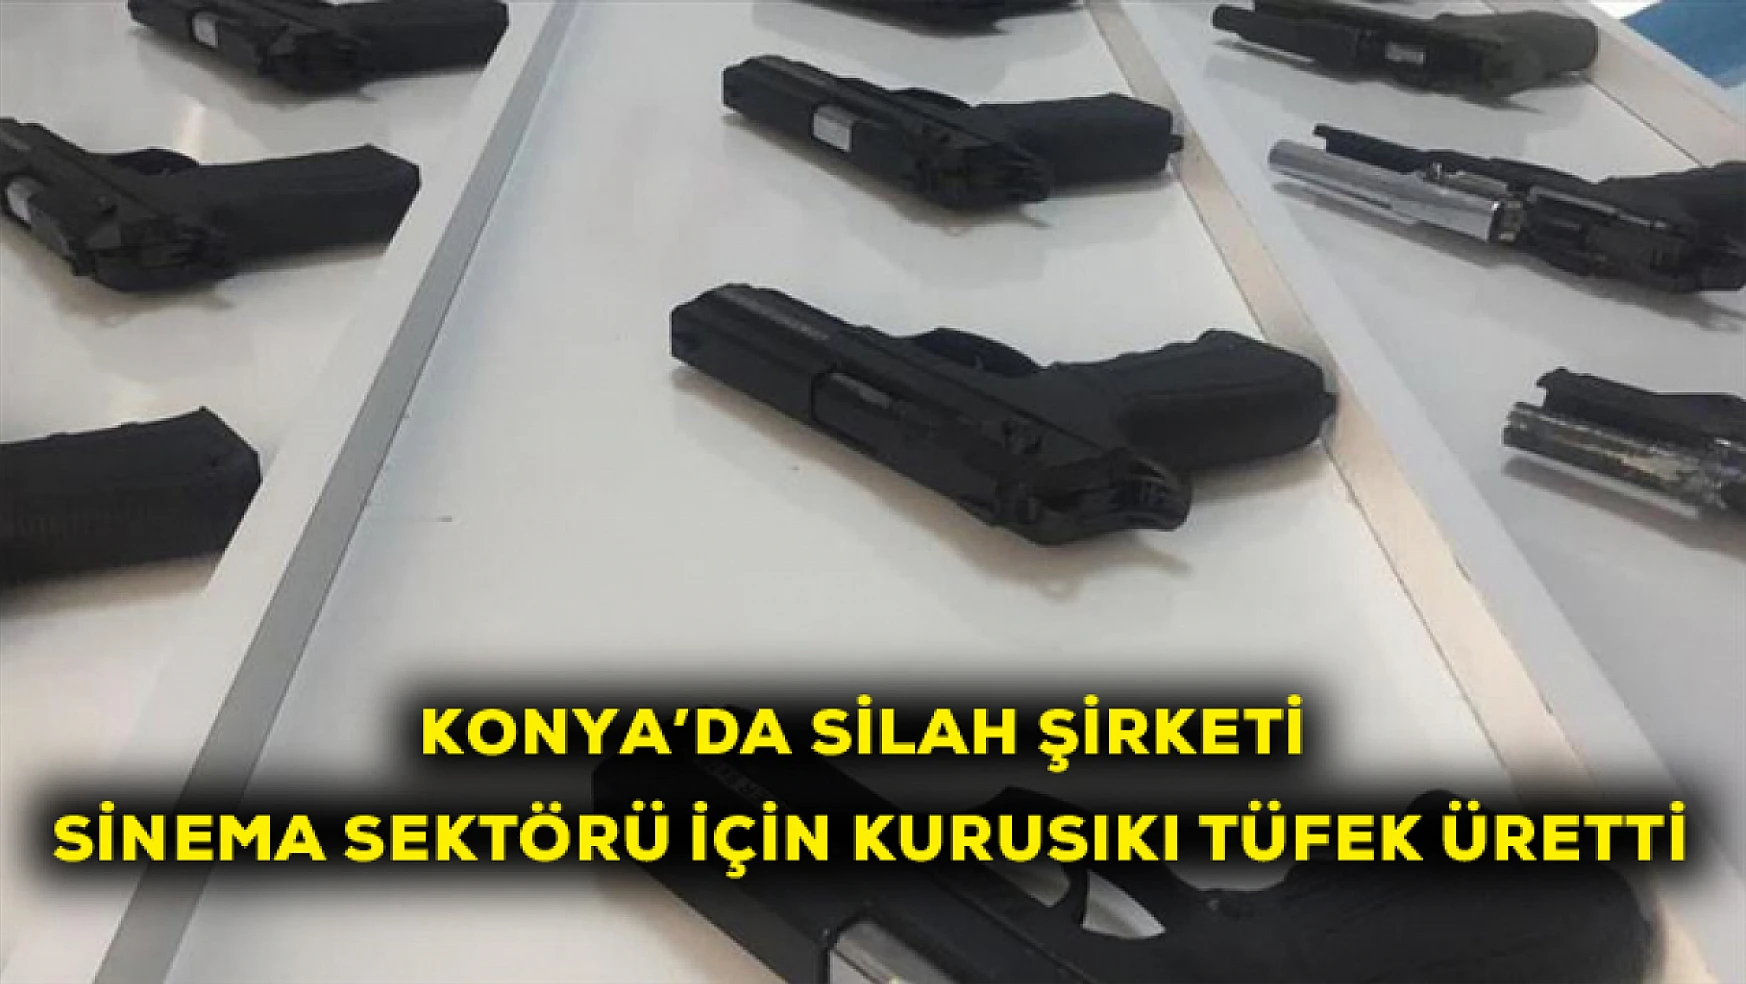 Konya'da silah şirketi sinema sektörü için kurusıkı tüfek üretti